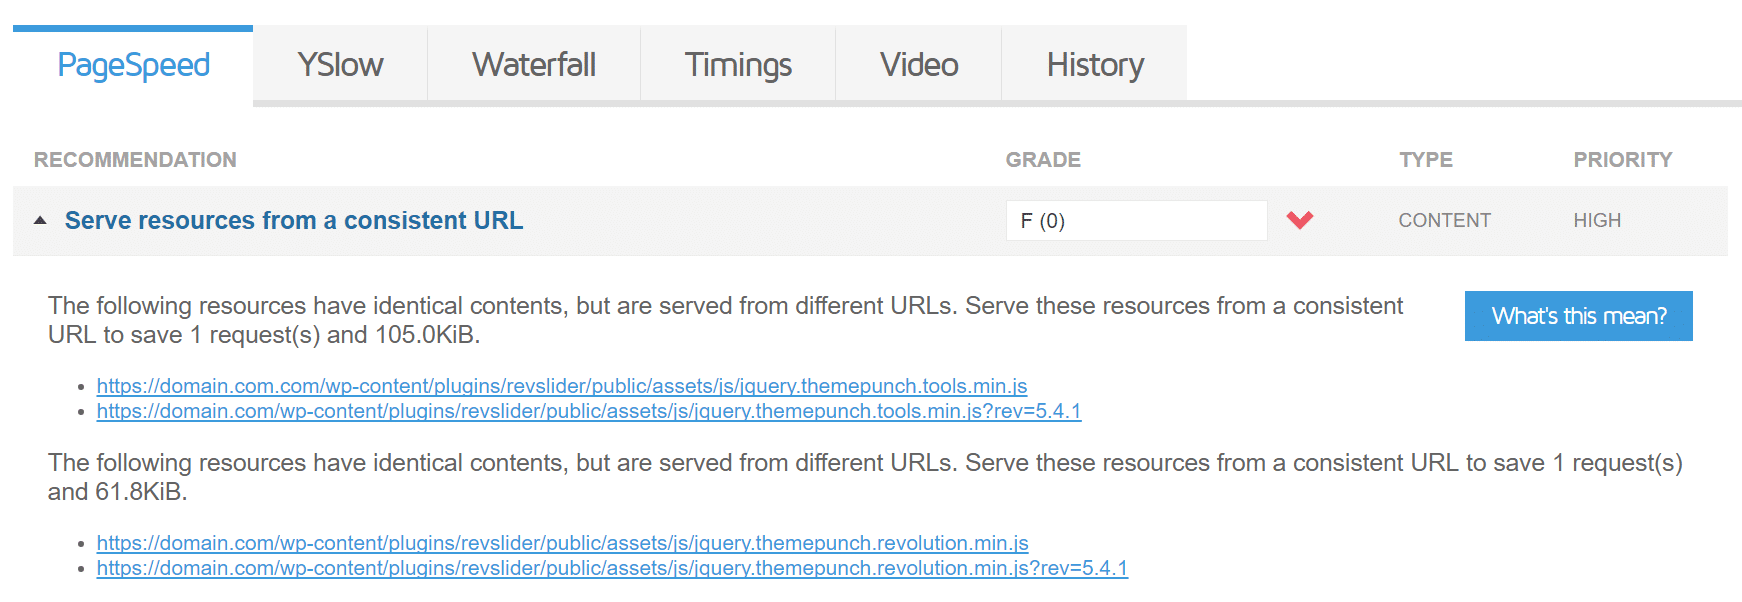 Servez des ressources à partir d'une URL cohérente